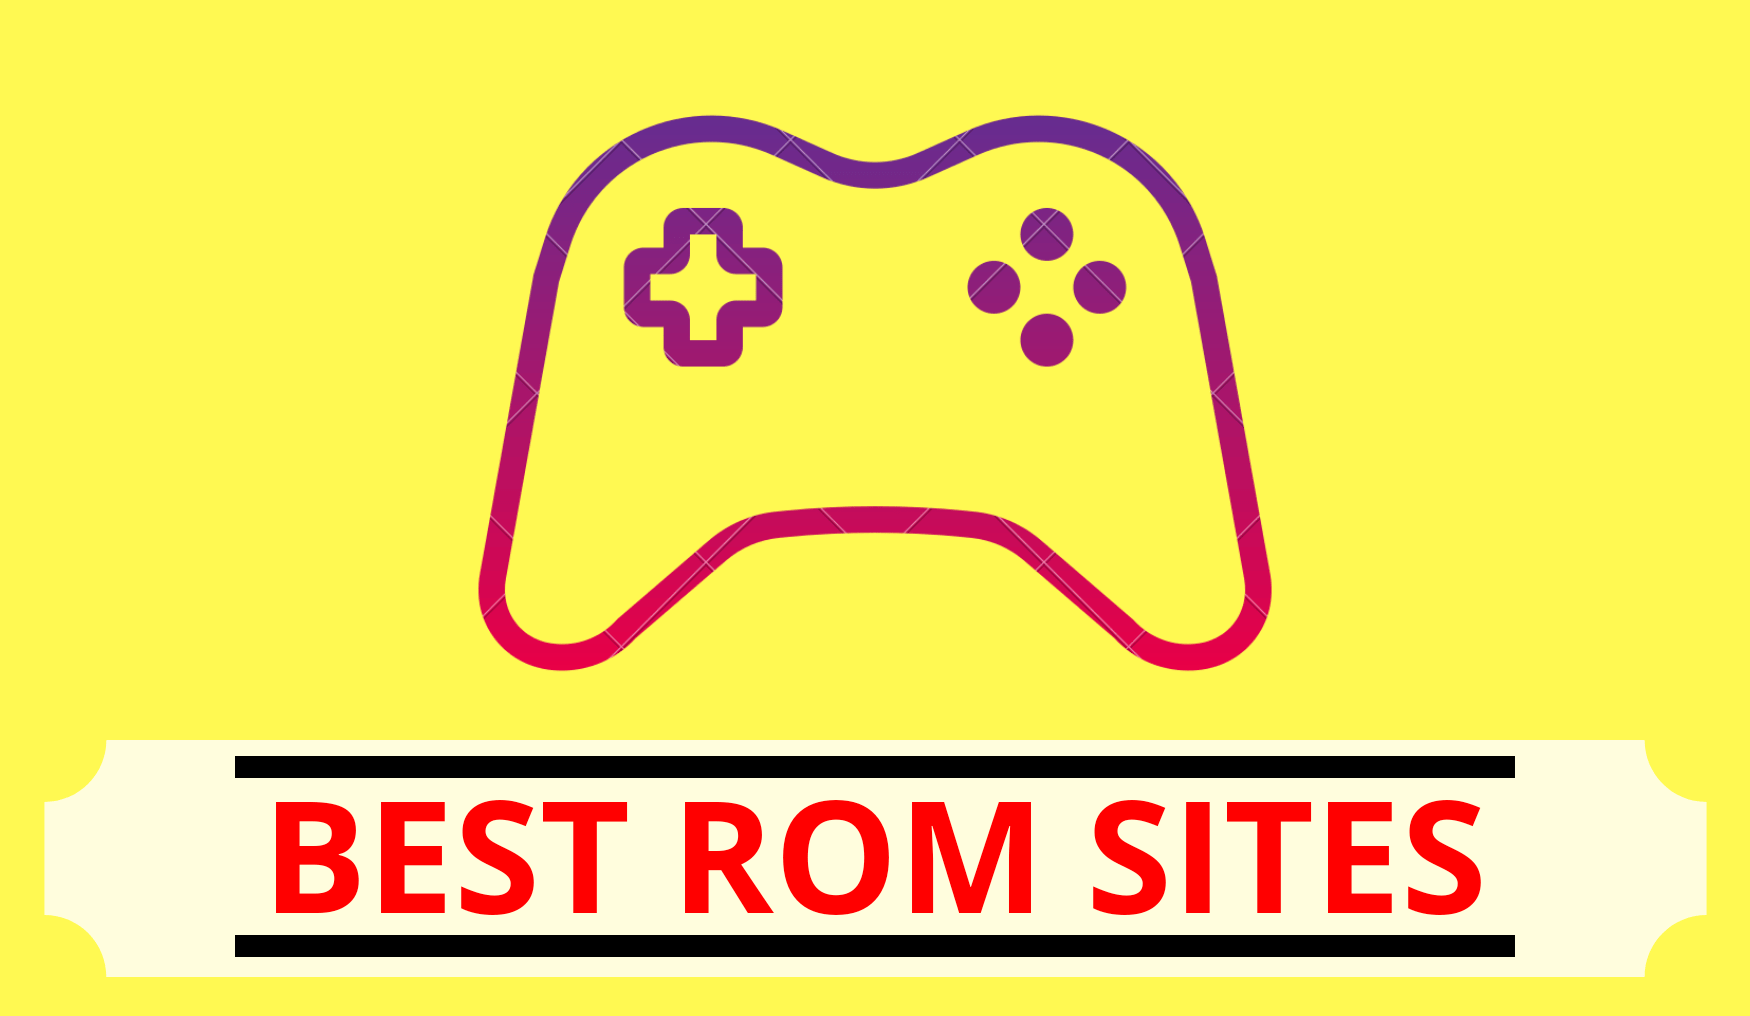 Best rom sites